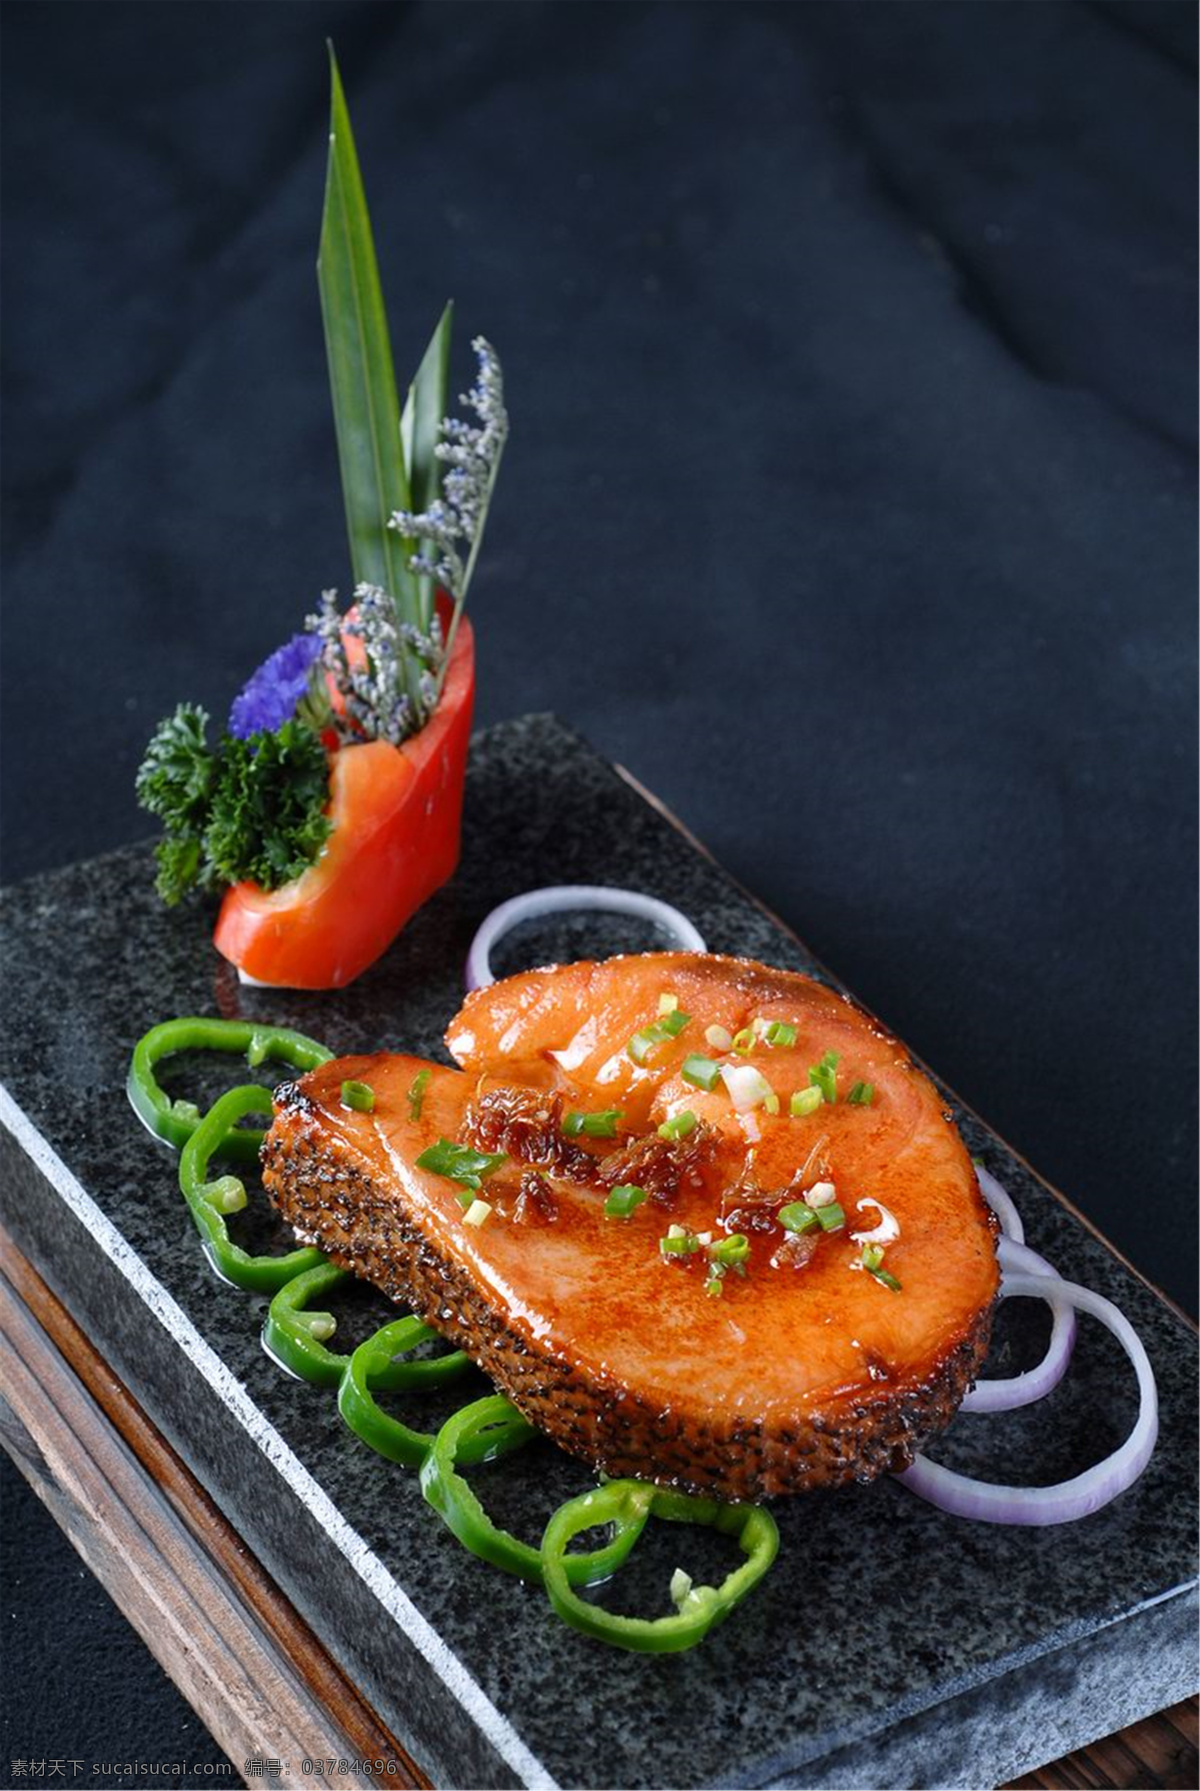 石板银鳕鱼 美食 传统美食 餐饮美食 高清菜谱用图